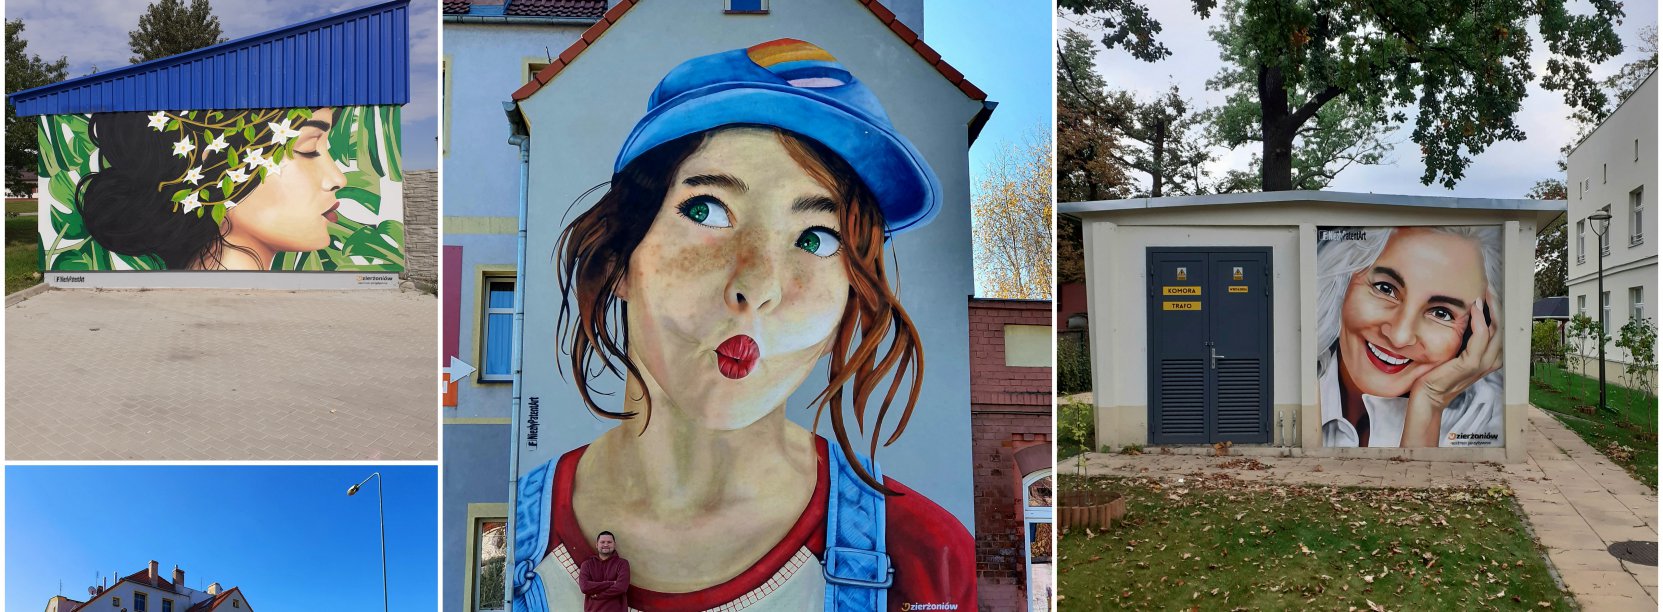 Kolaż zdjęć trzech murali przedstawiających kobiece twarze